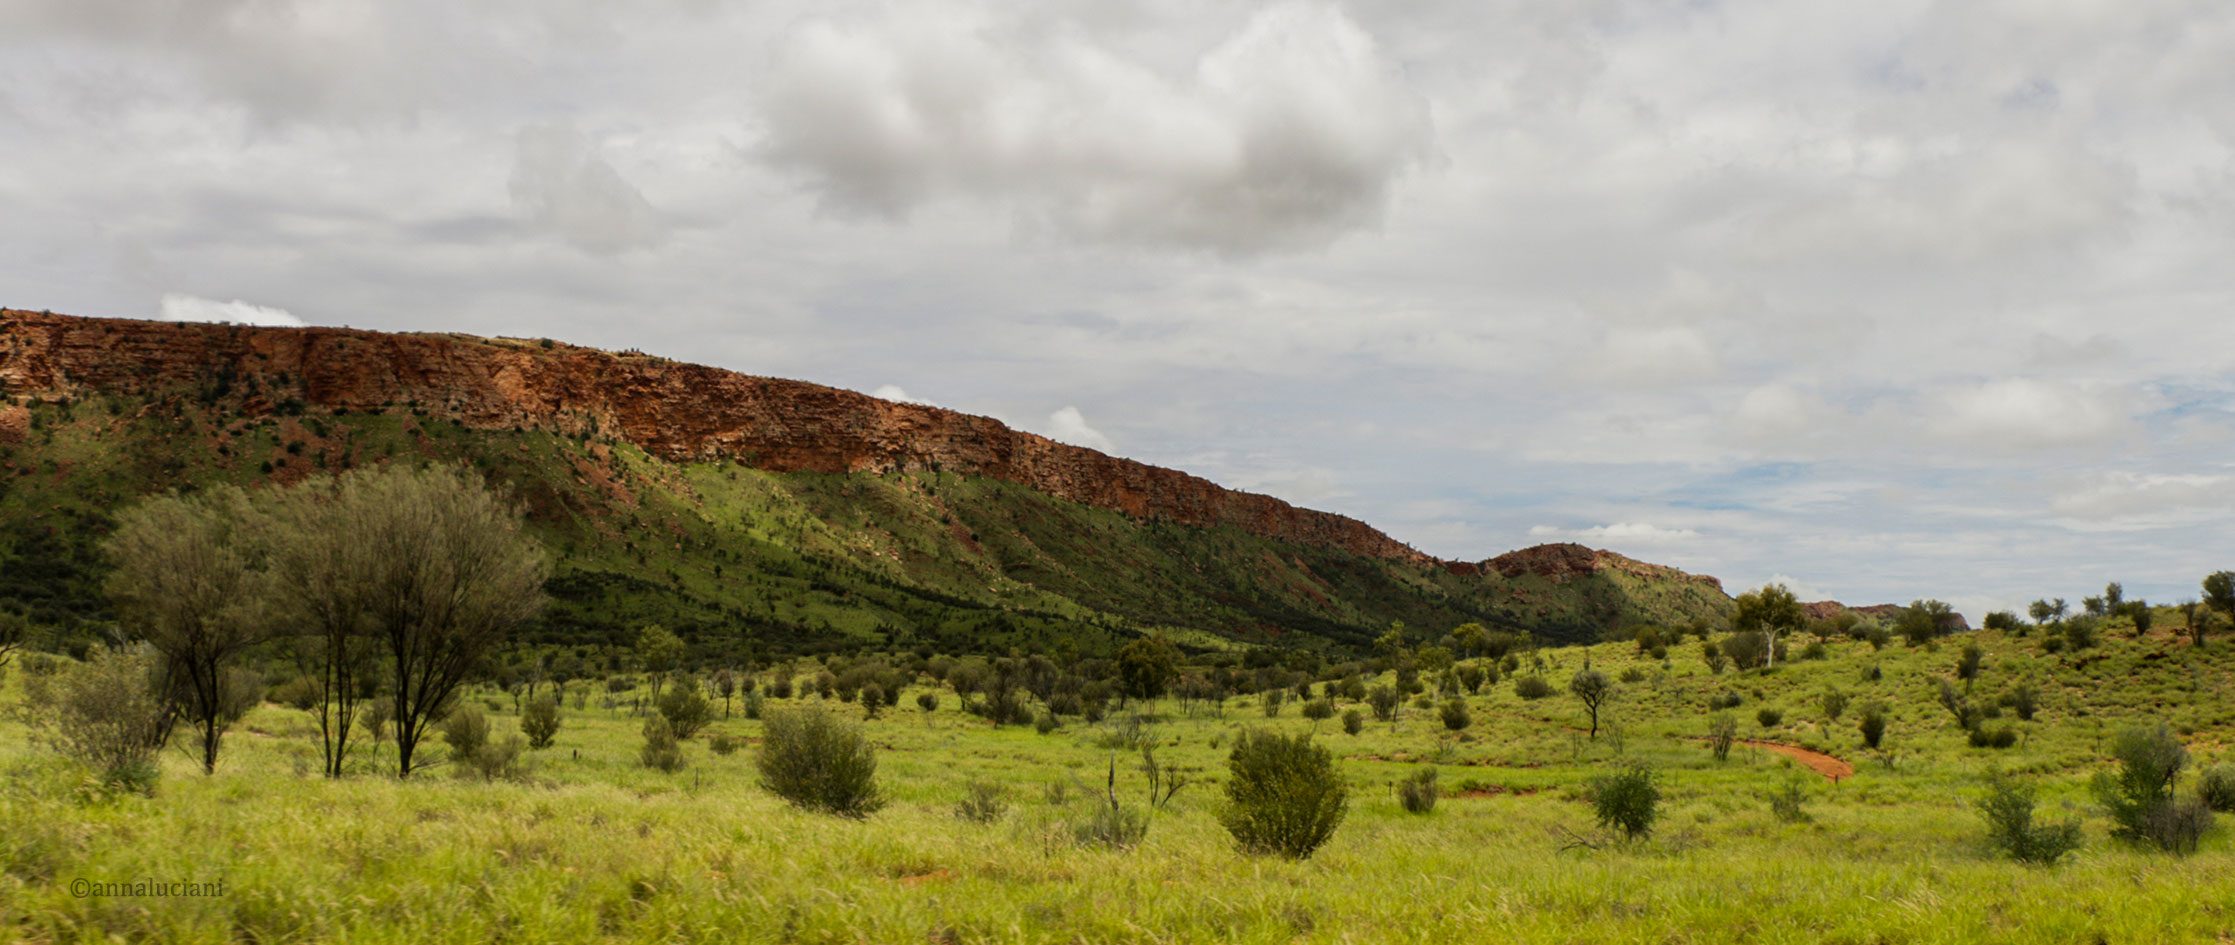 Alice Springs incontri